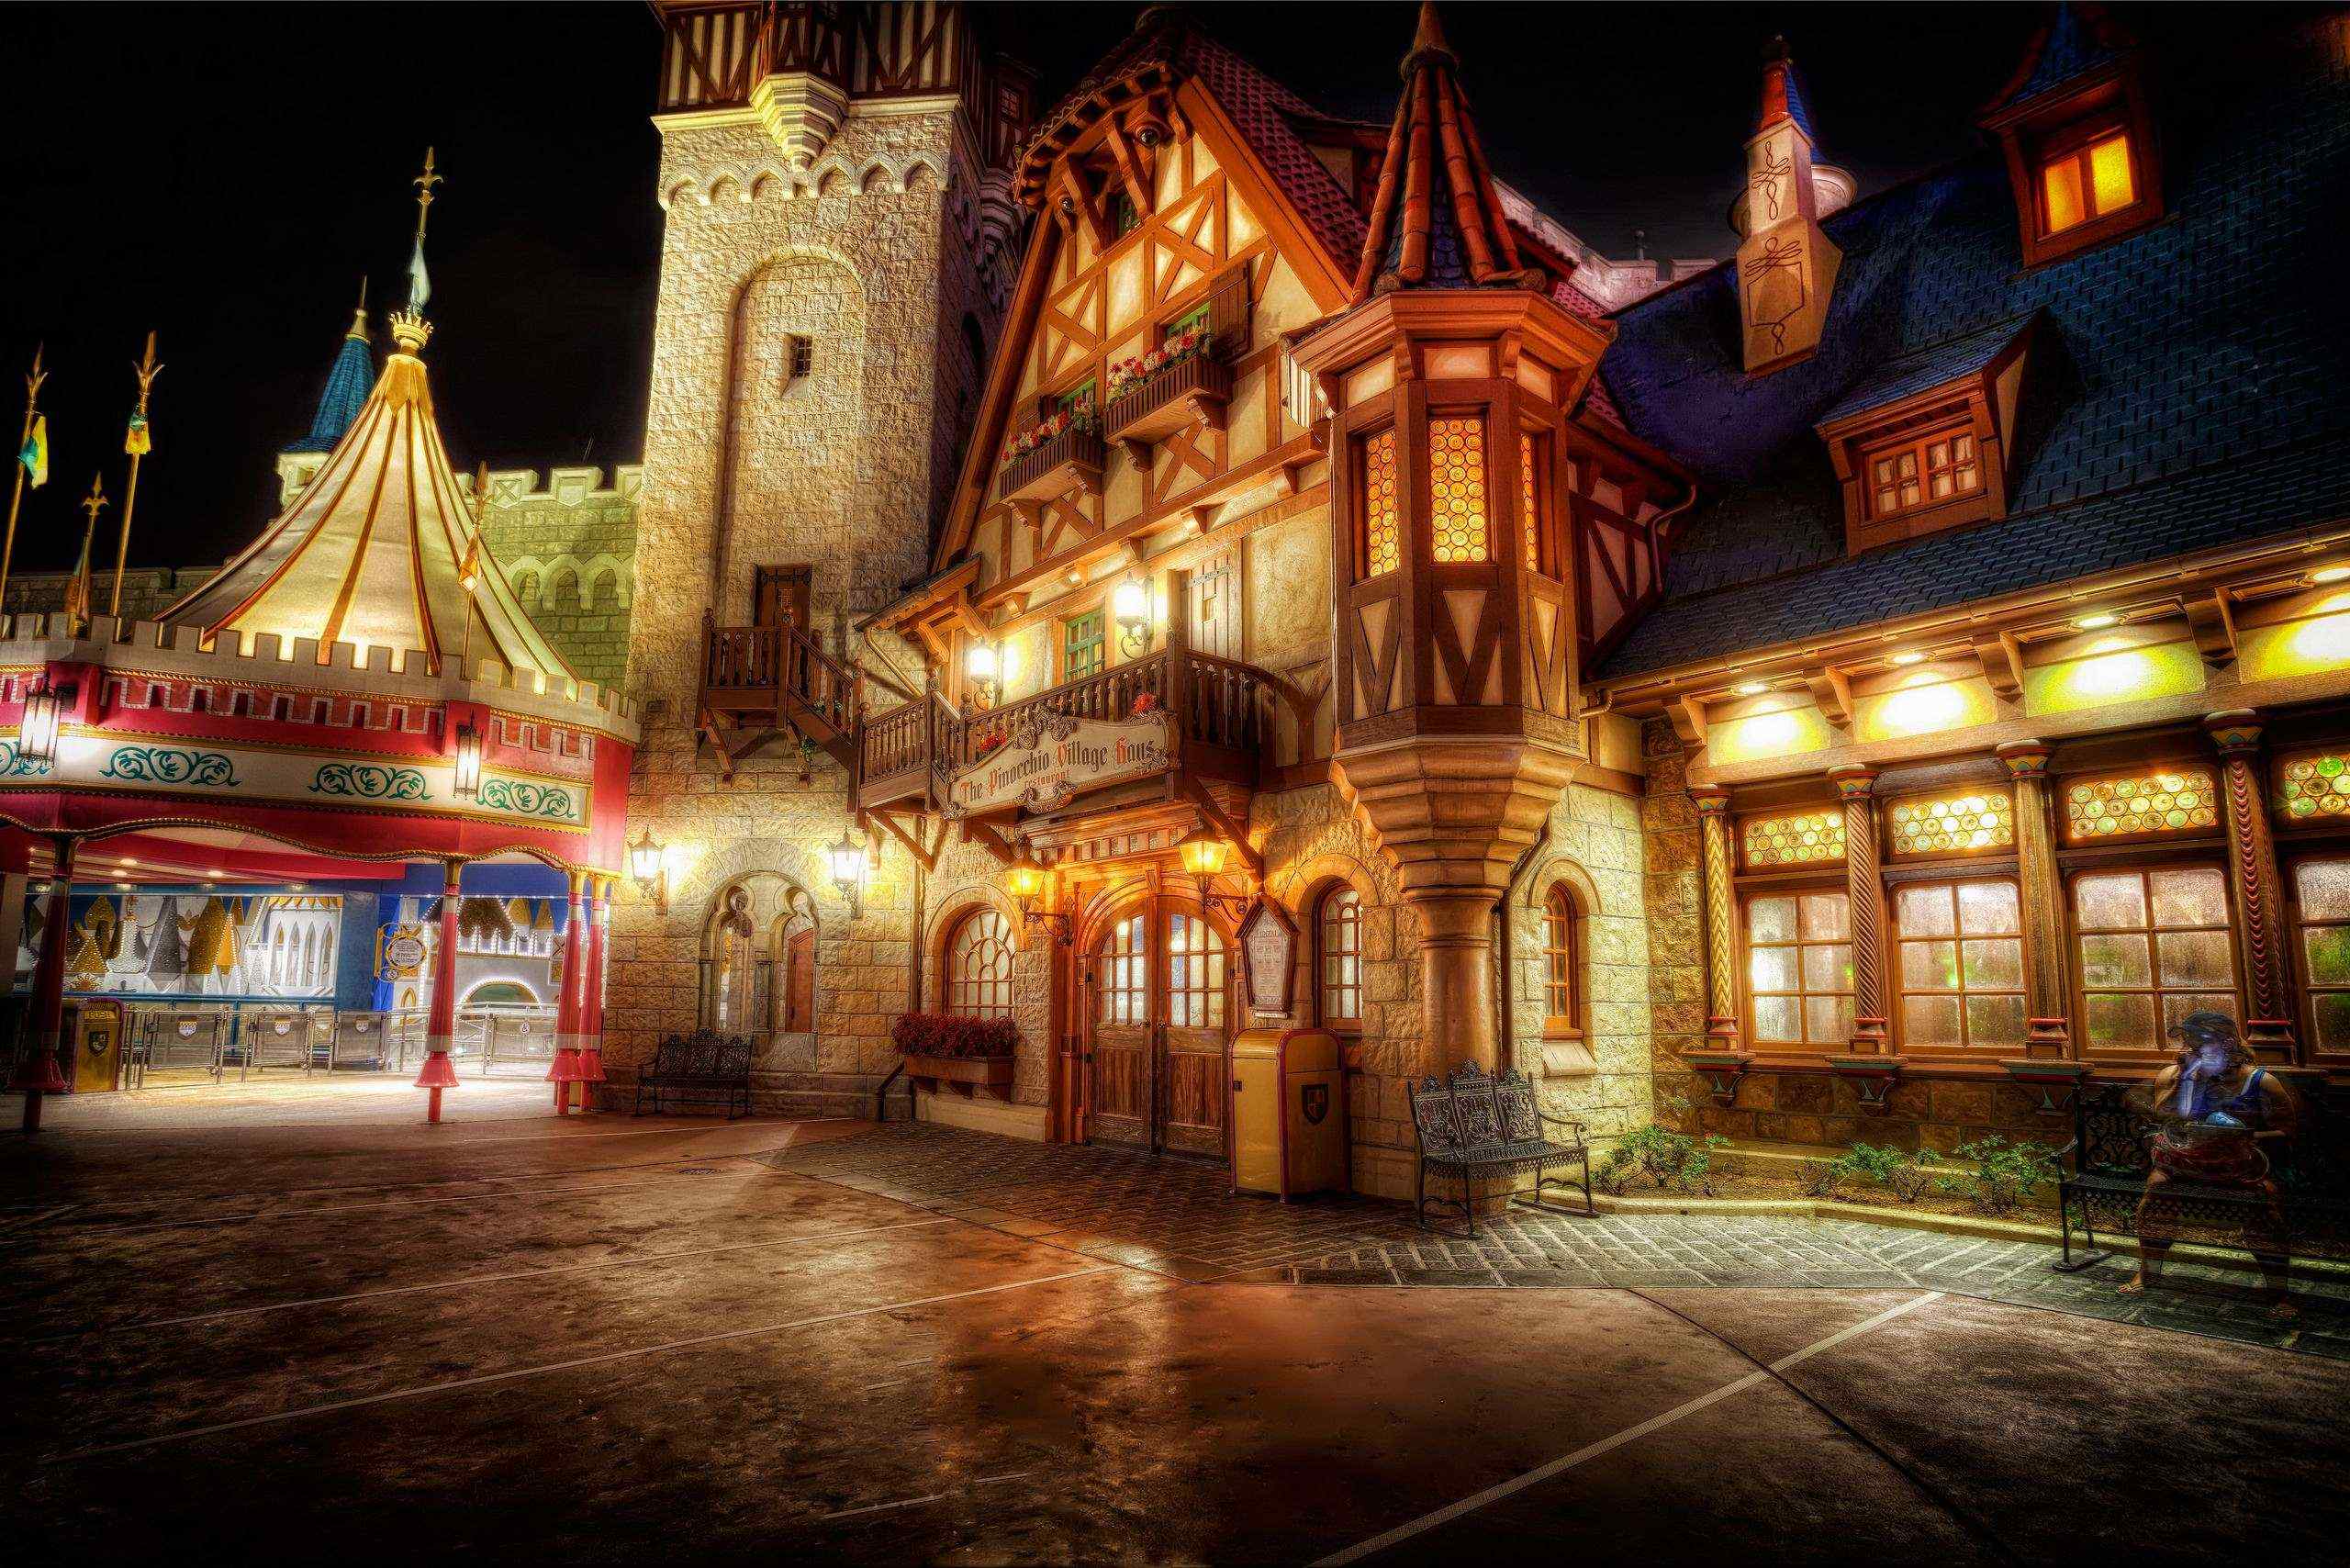 迪士尼乐园唯美夜景风景图片桌面壁纸